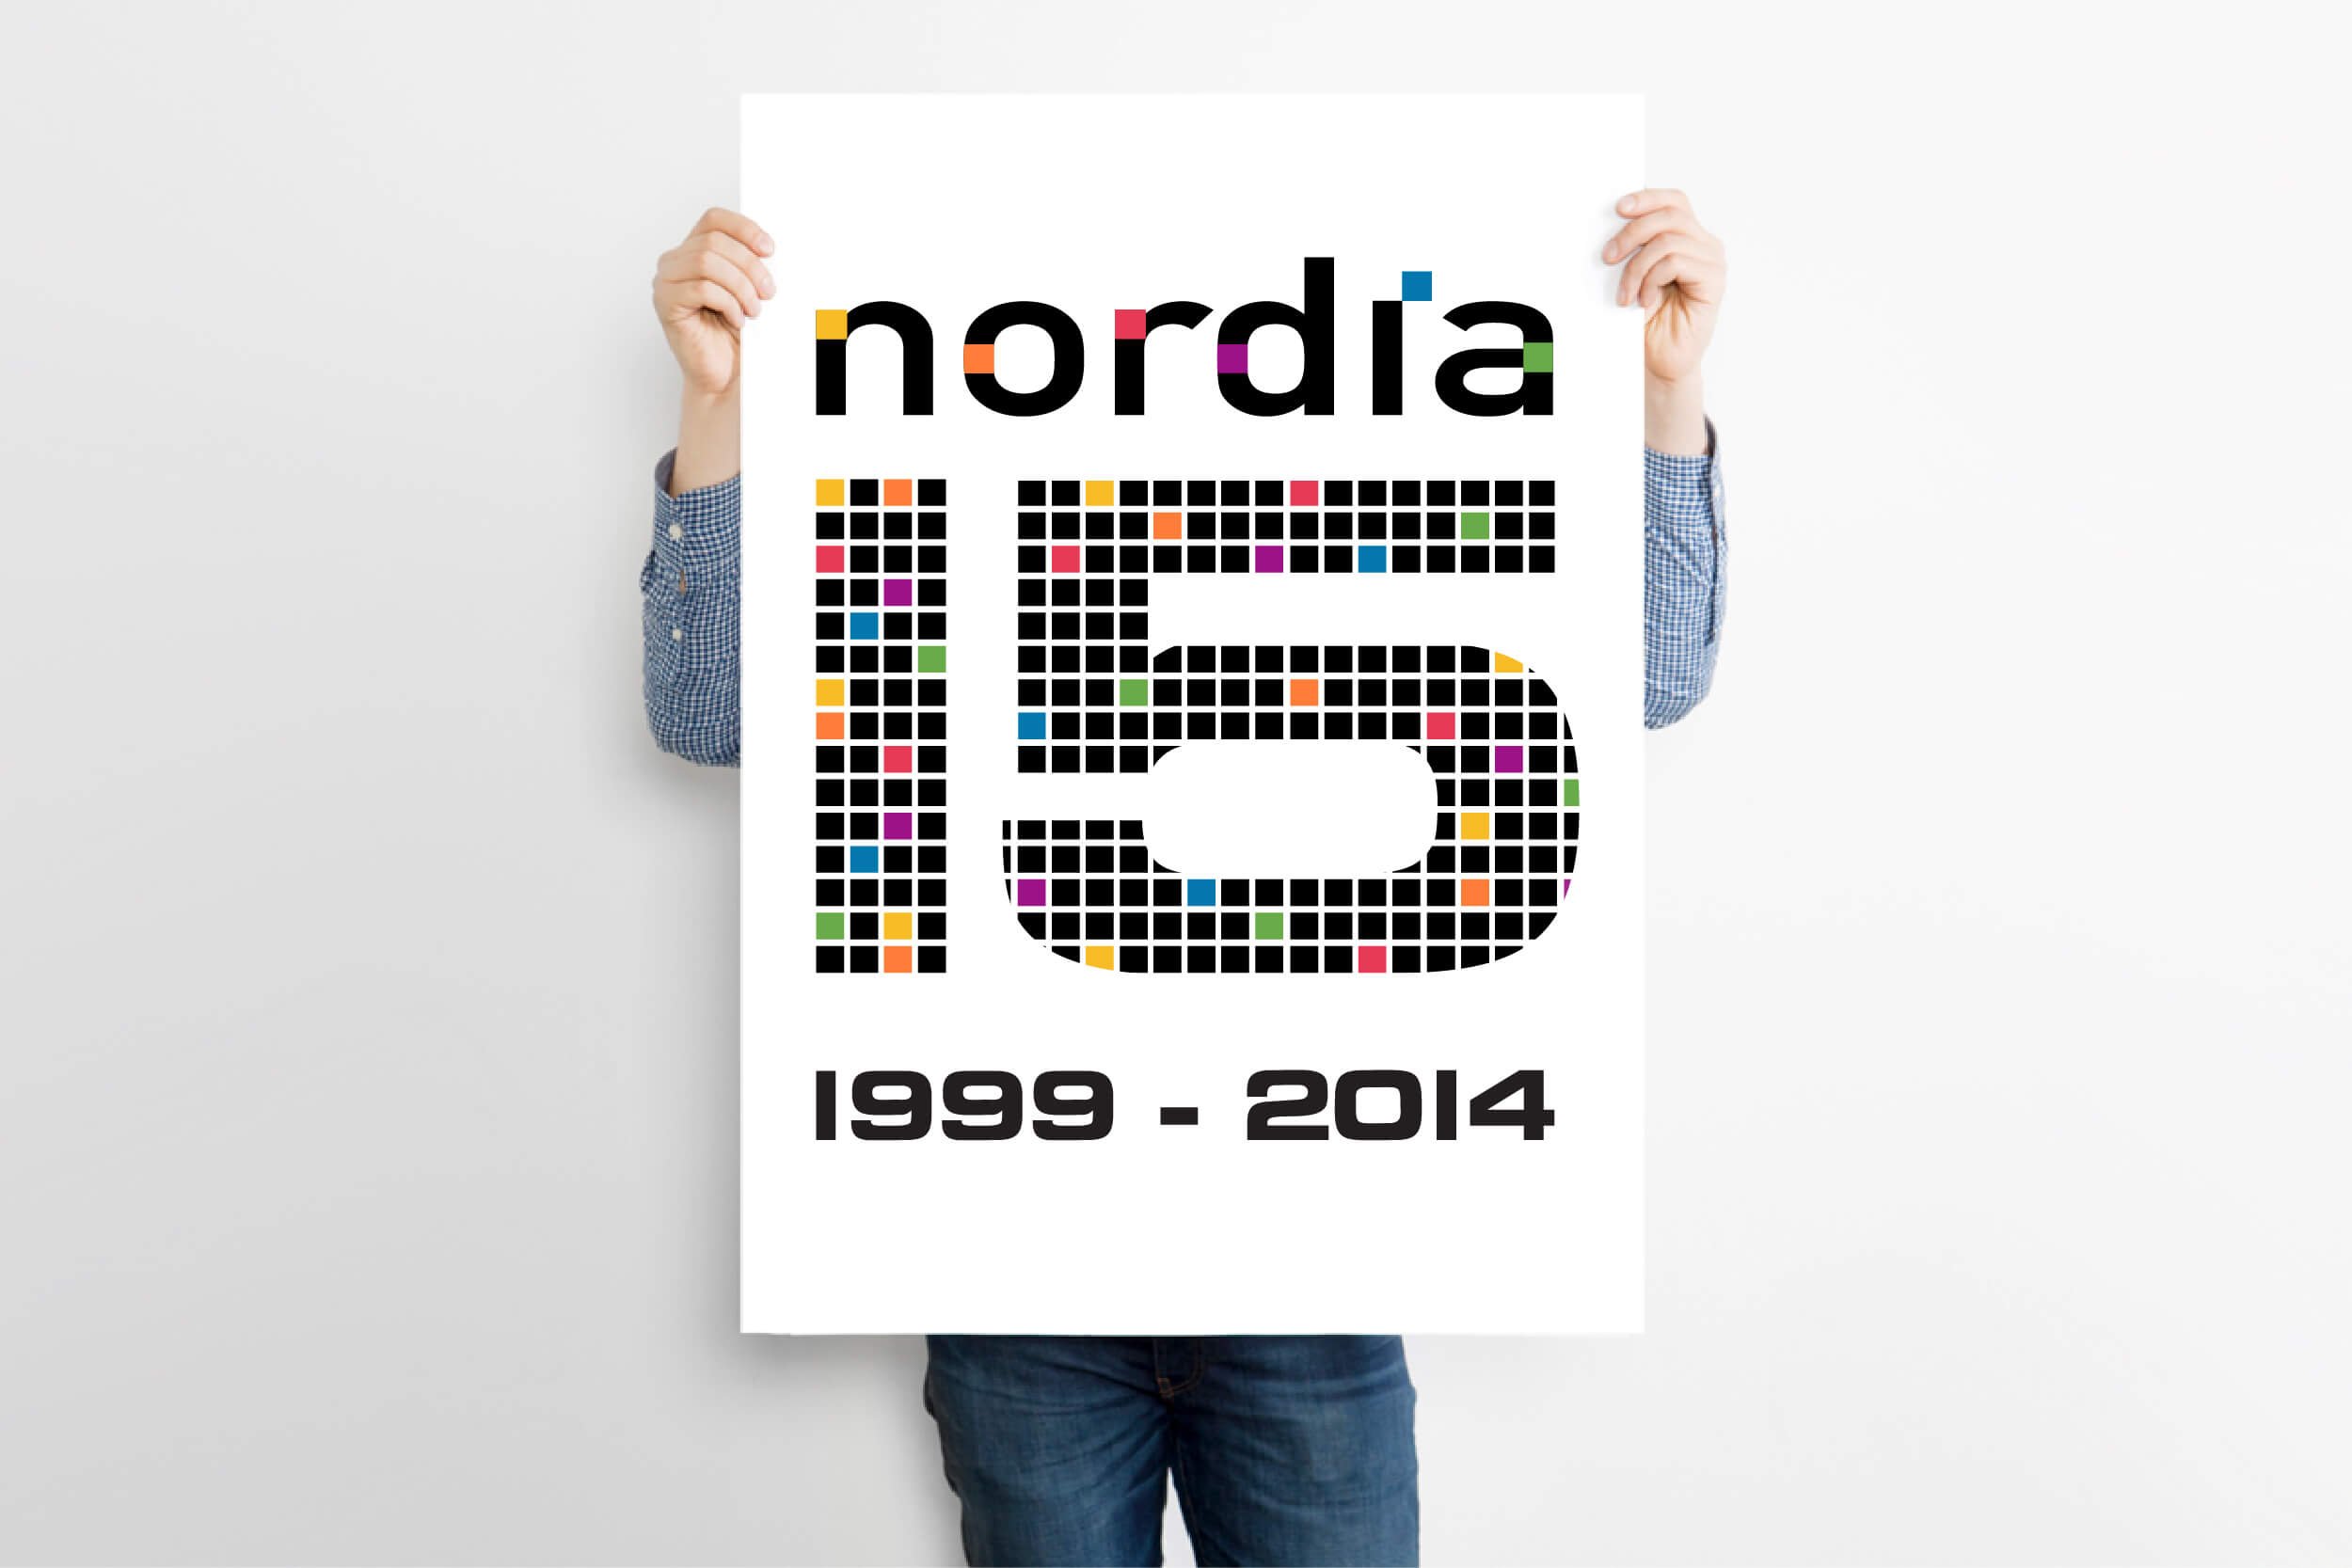 + Nordia at 15